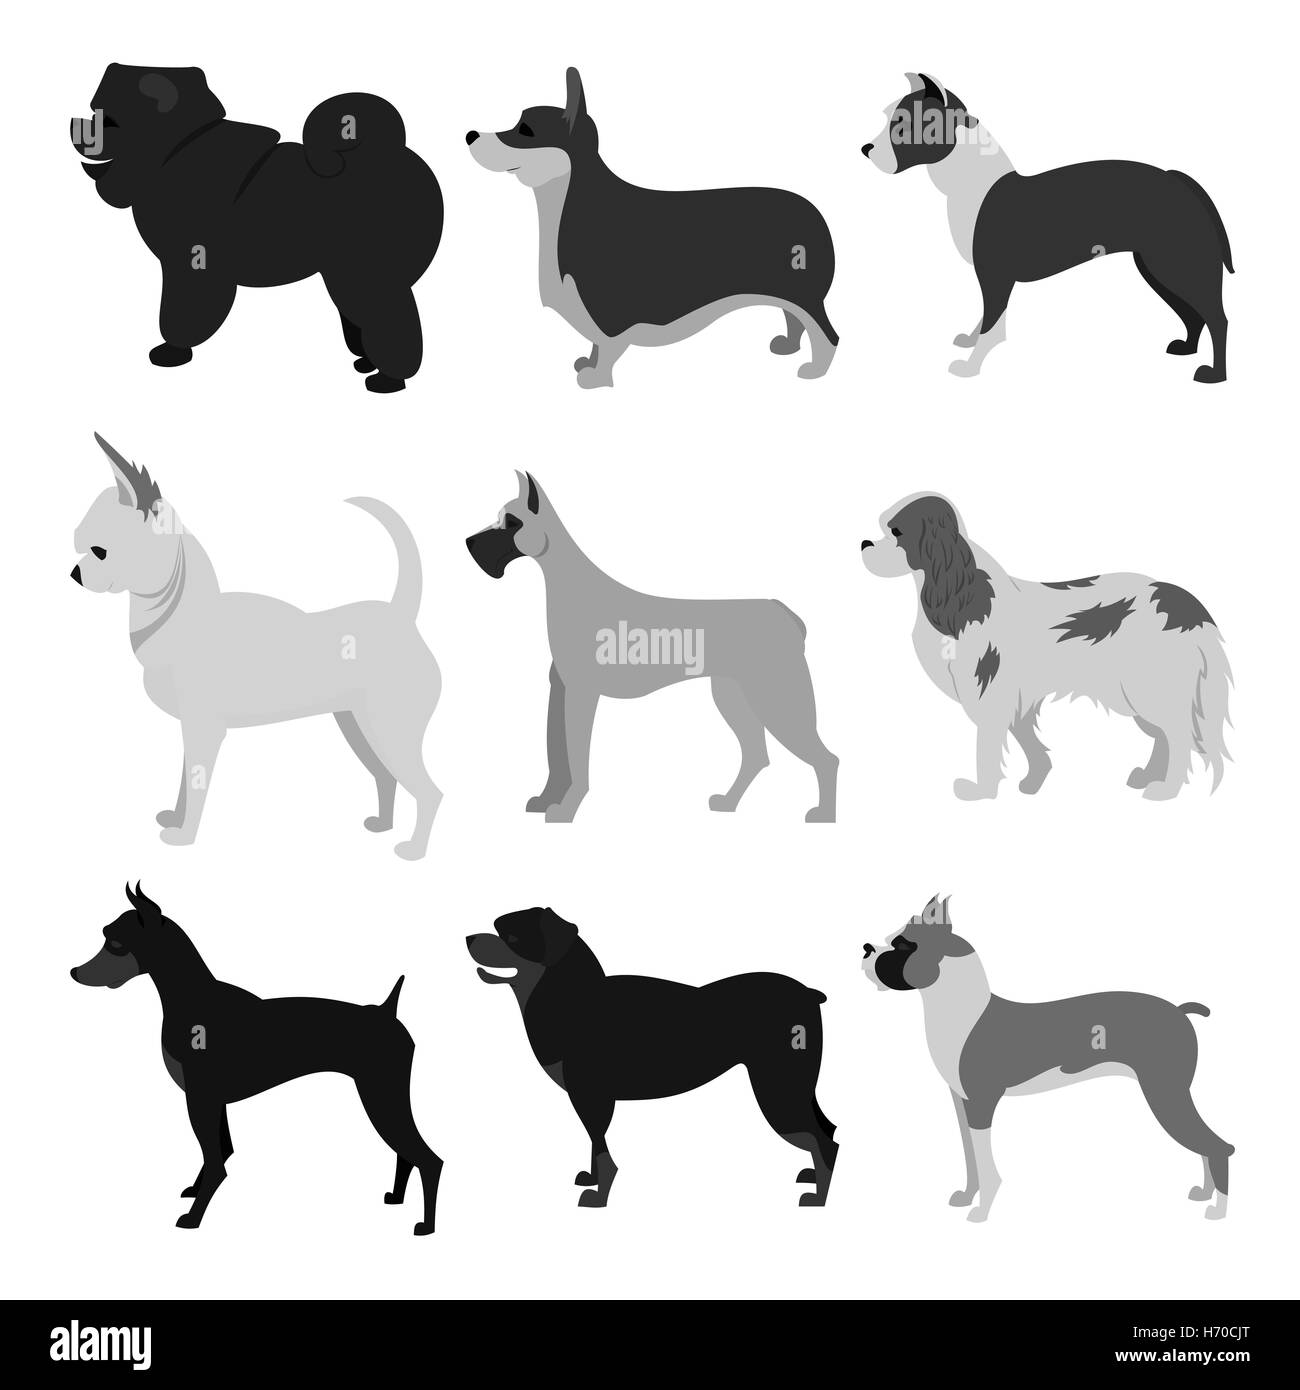 Set of dog breeds Stock Photo